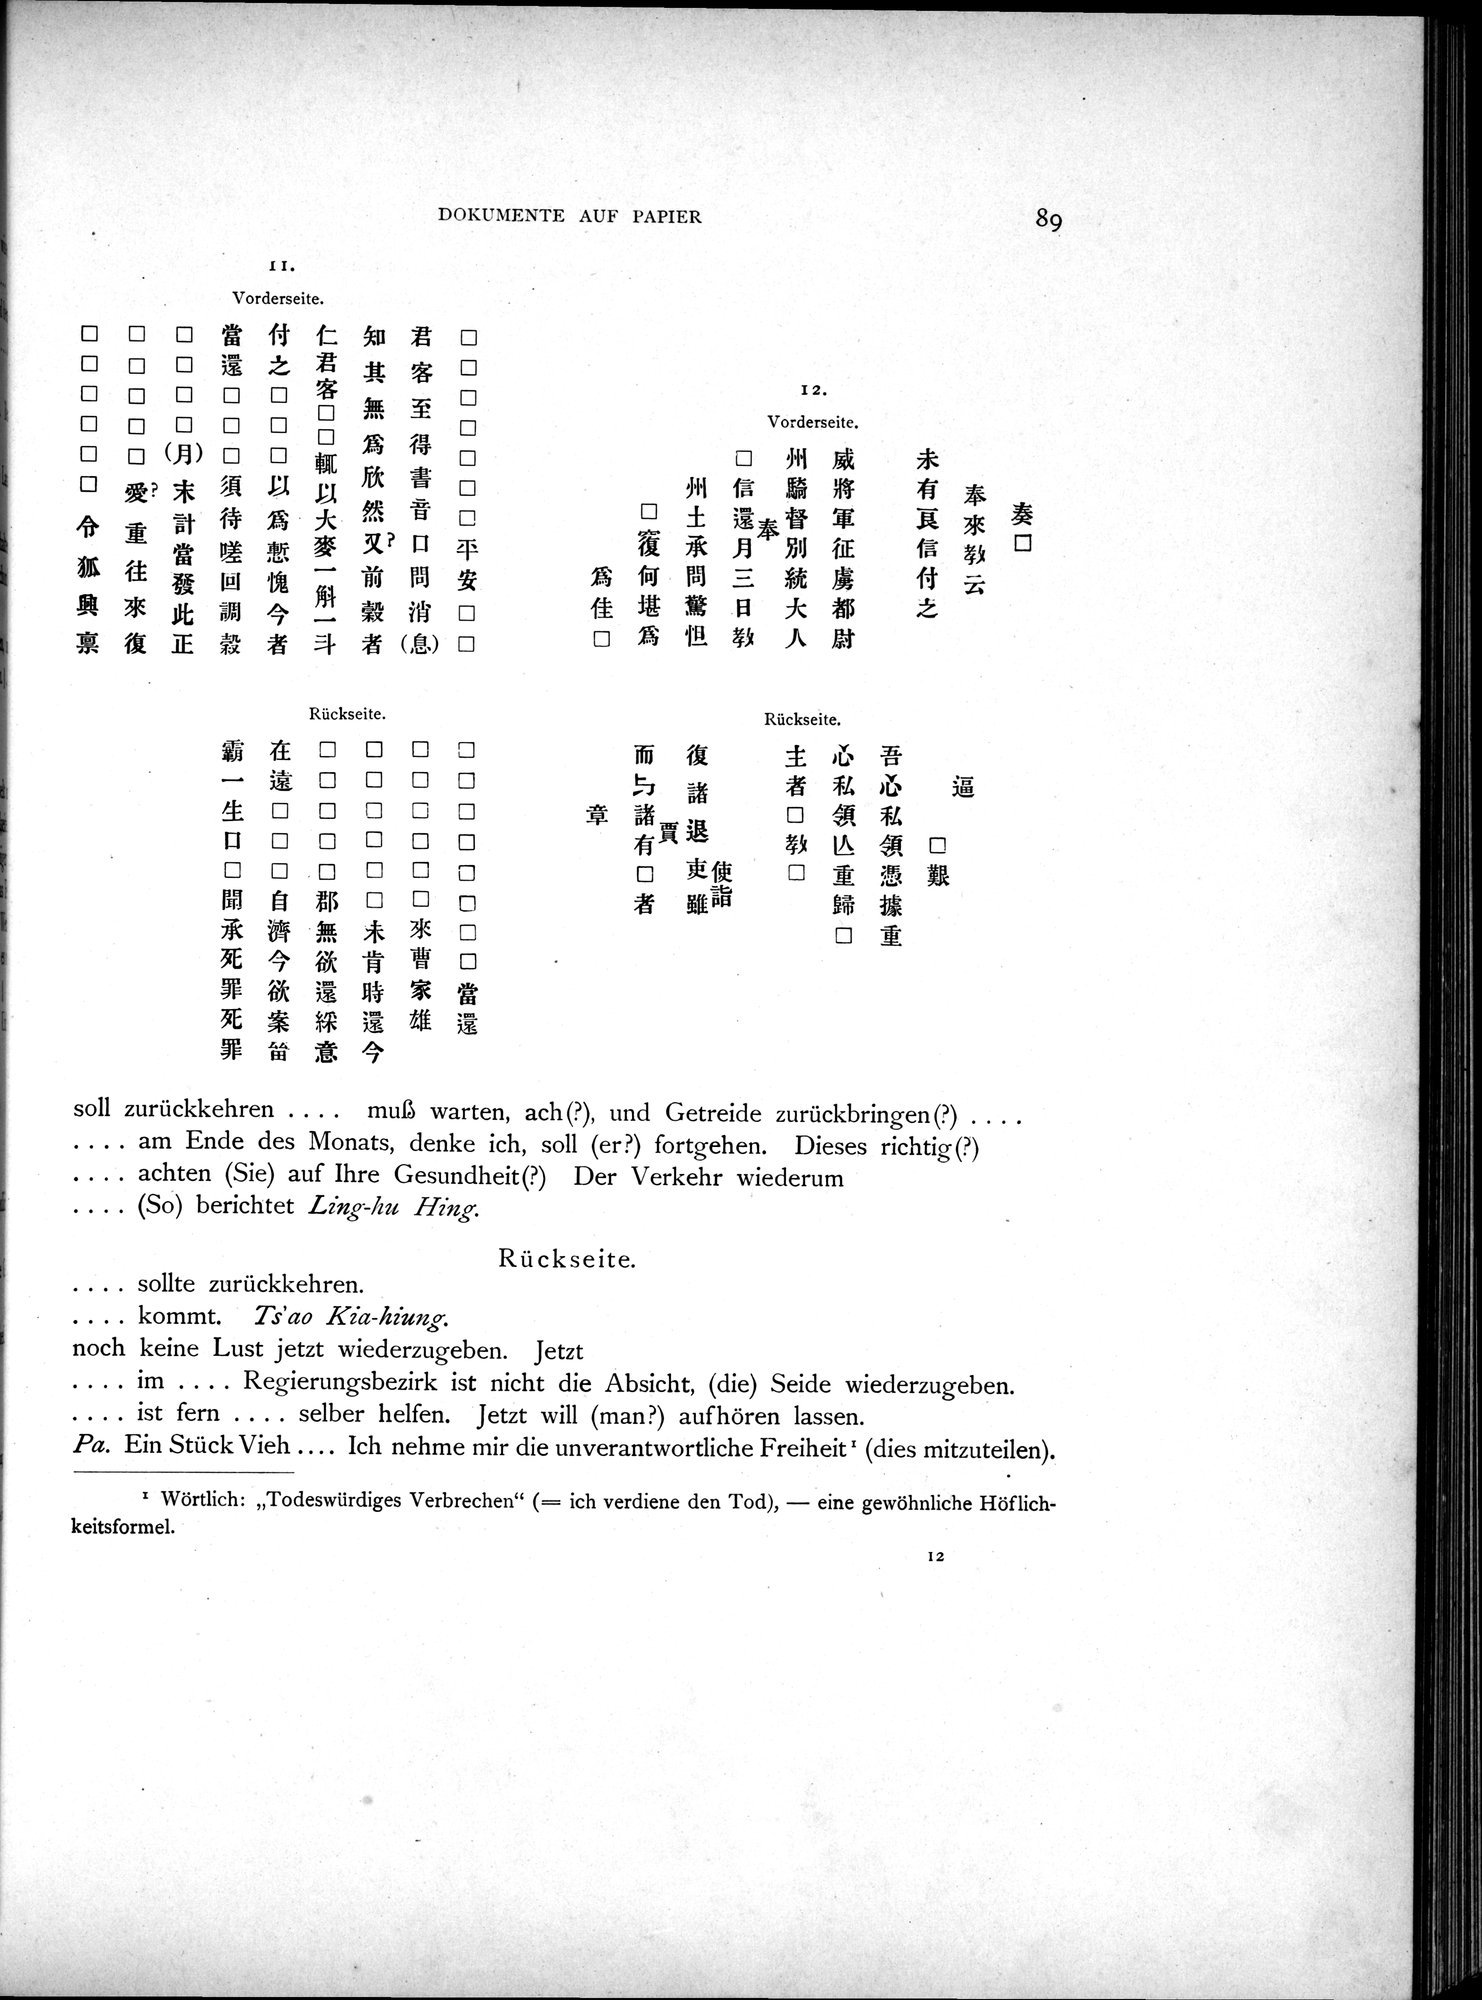 Die Chinesischen Handschriften- und sonstigen Kleinfunde Sven Hedins in Lou-lan : vol.1 / Page 113 (Grayscale High Resolution Image)